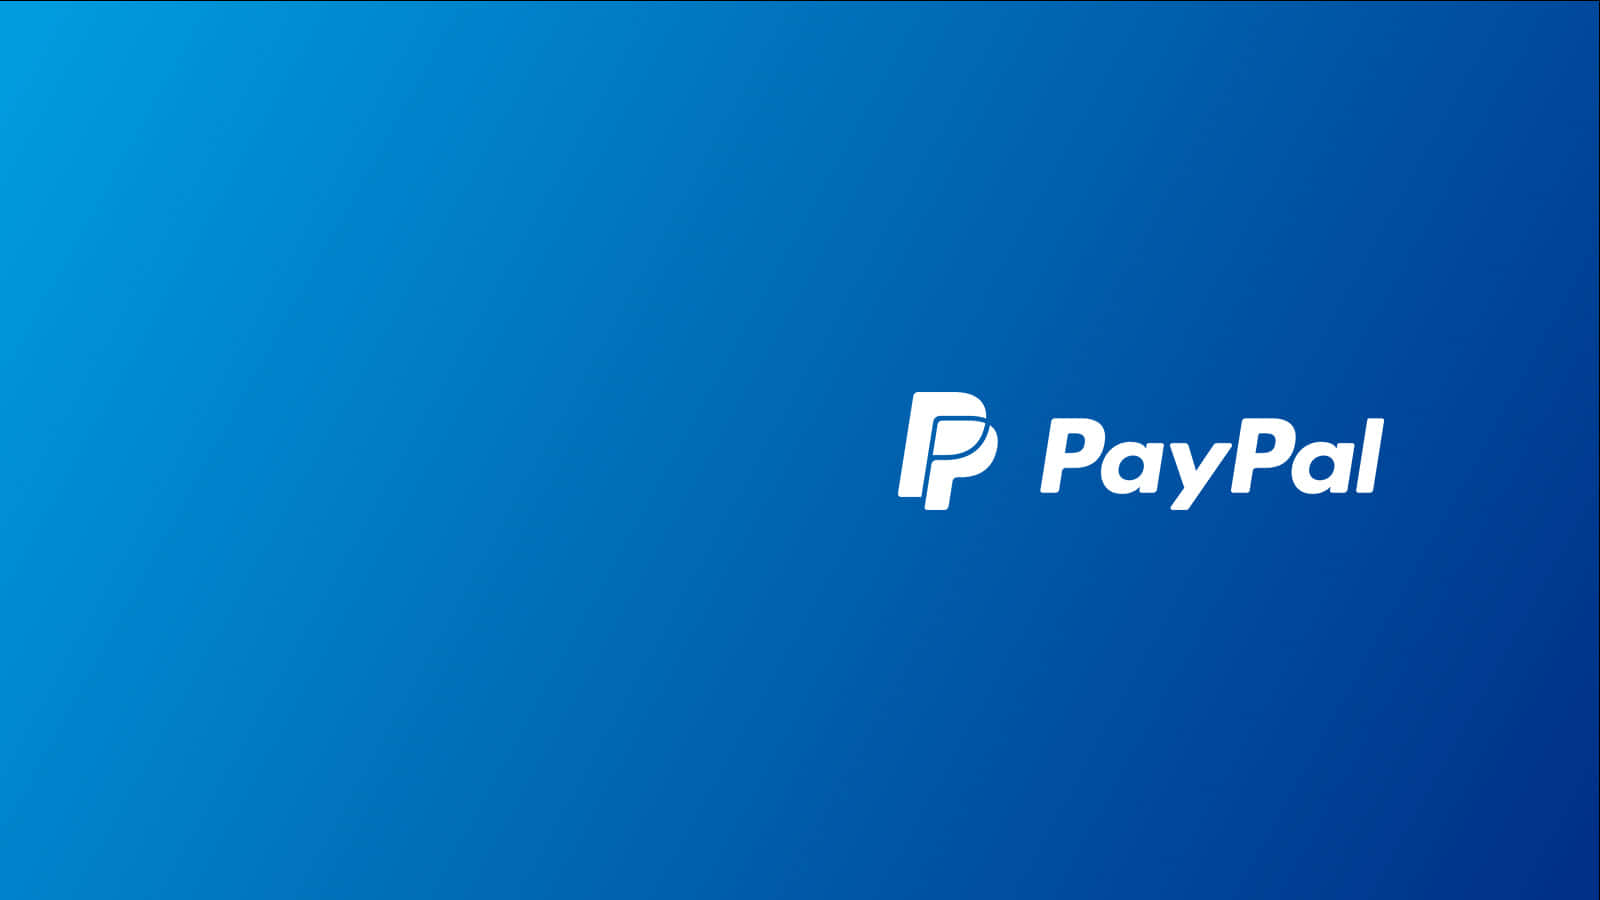 Compree Pague Online De Forma Segura Com O Paypal.